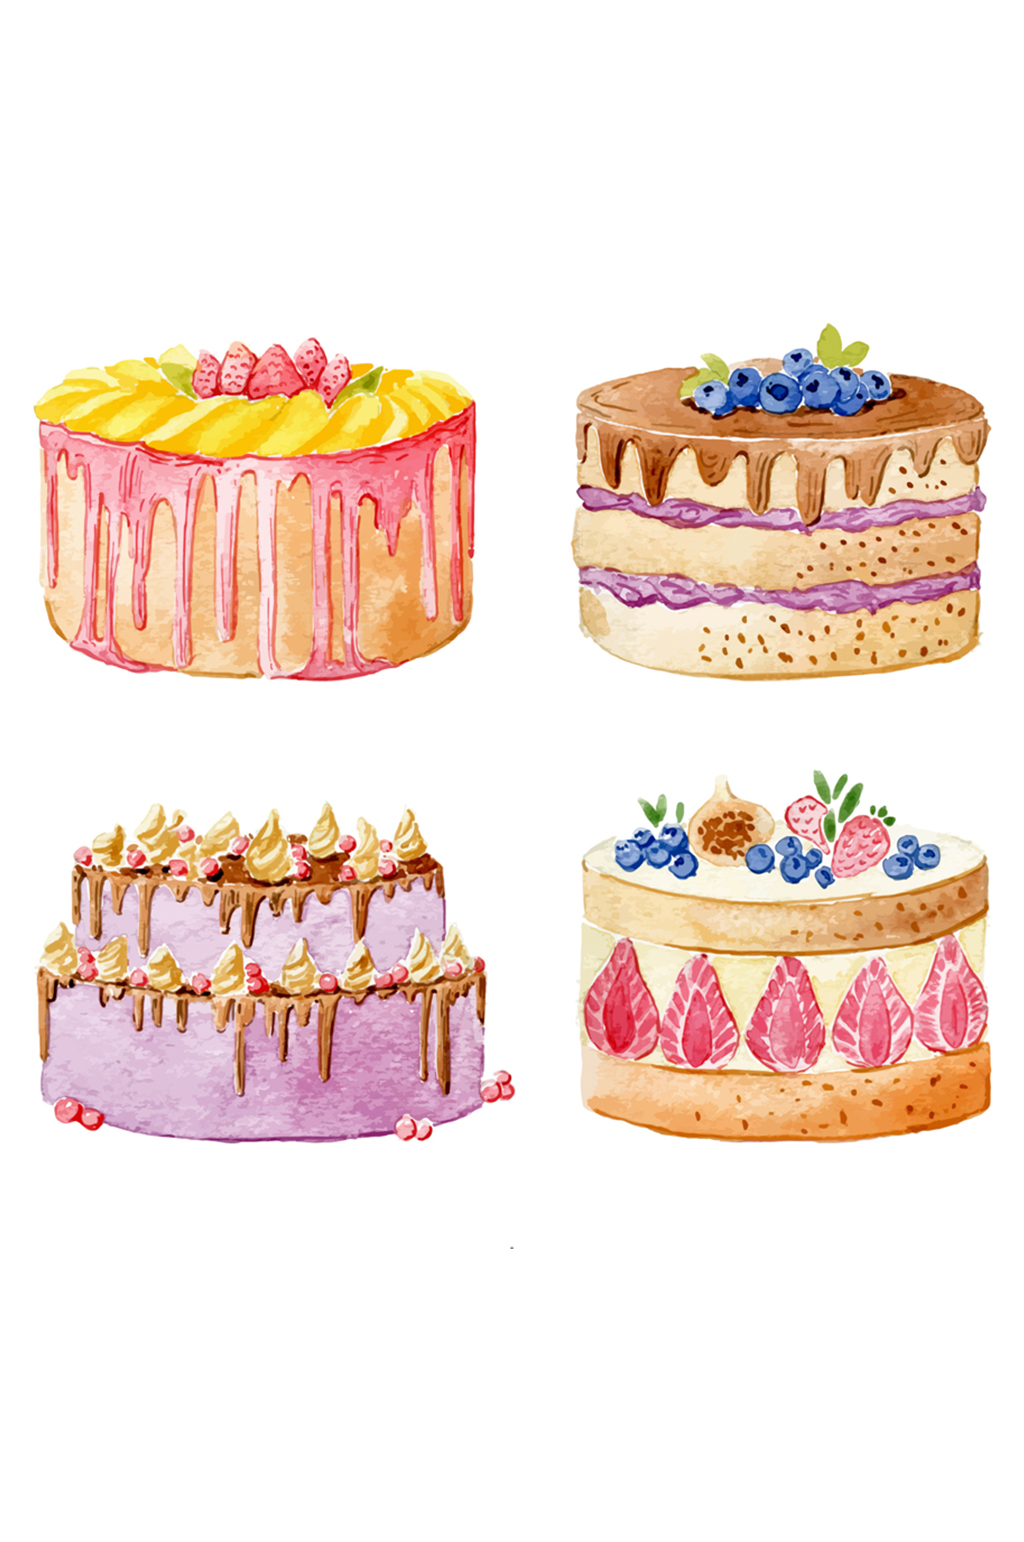 4款水彩绘蛋糕设计矢量素材